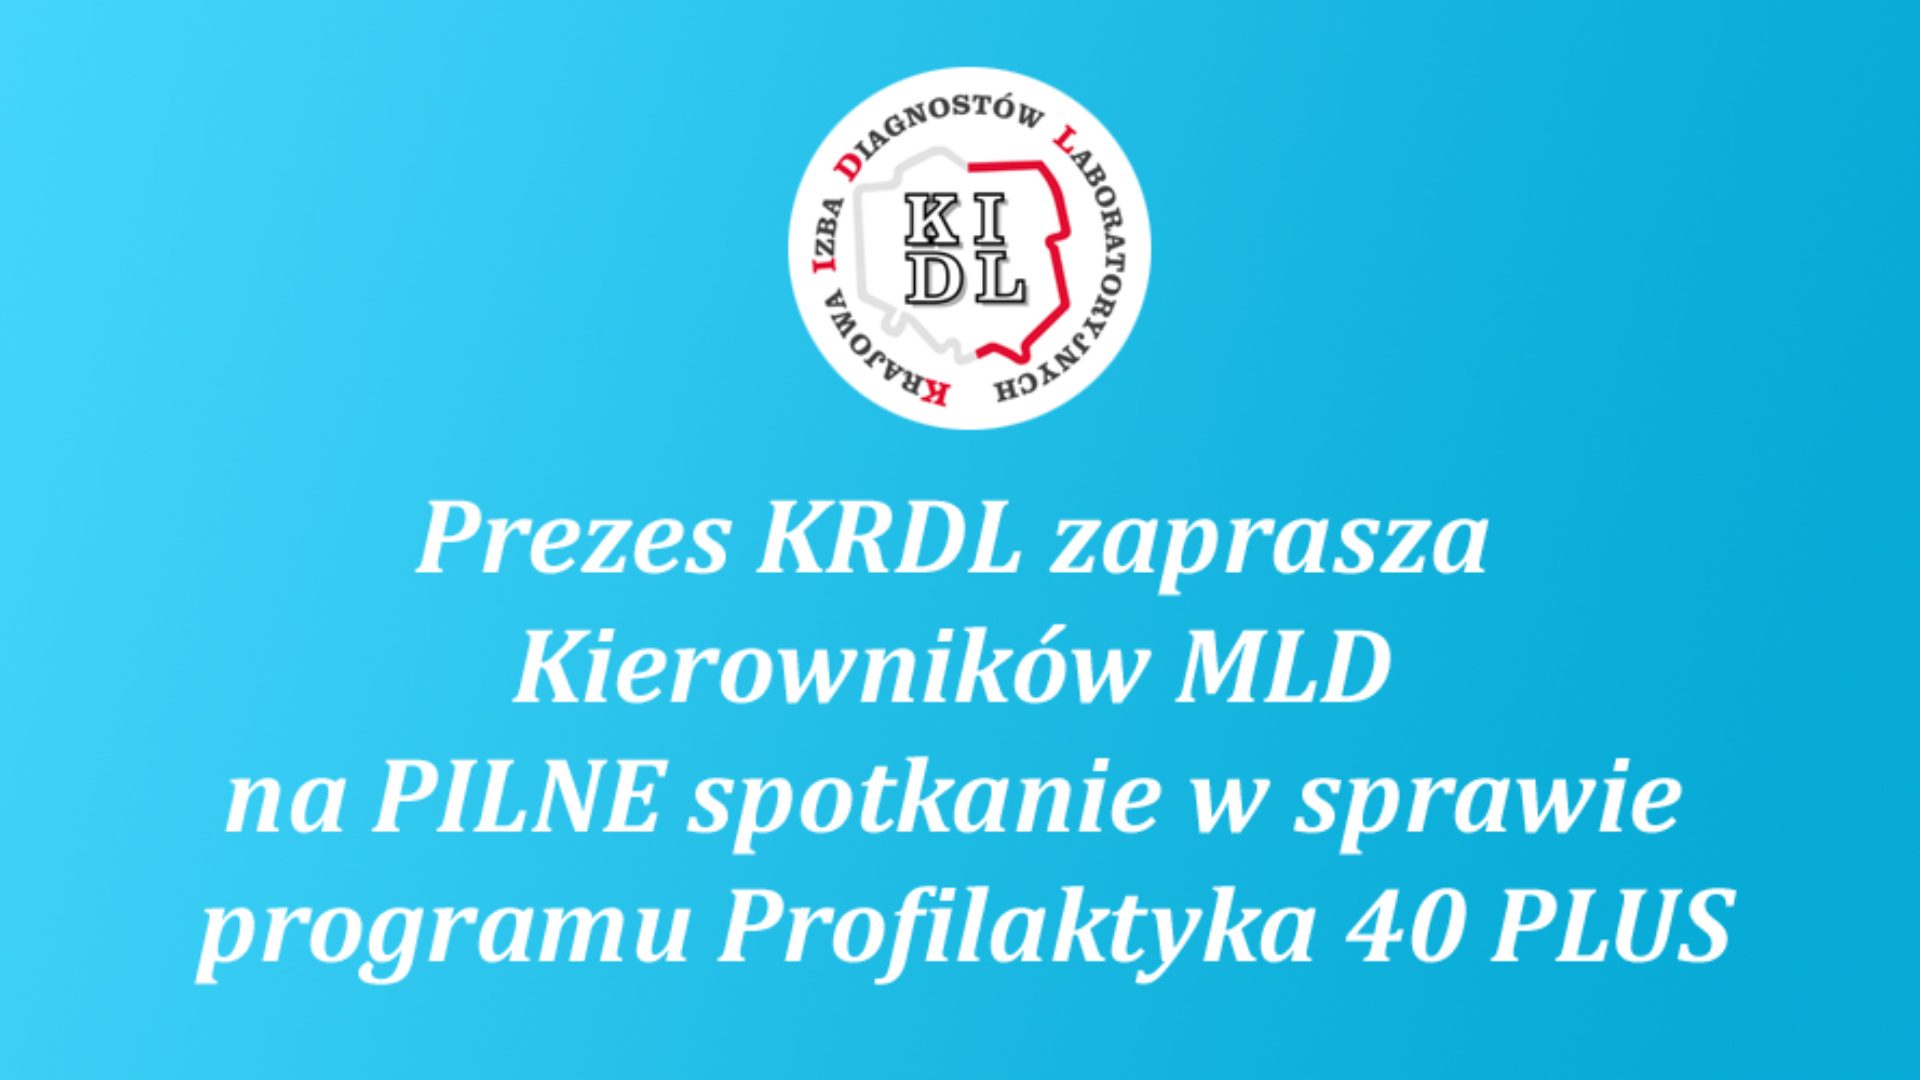 W imieniu Prezes KRDL Aliny Niewiadomskiej serdecznie zapraszamy na spotkanie w sprawie programu Profilaktyka 40 PLUS.